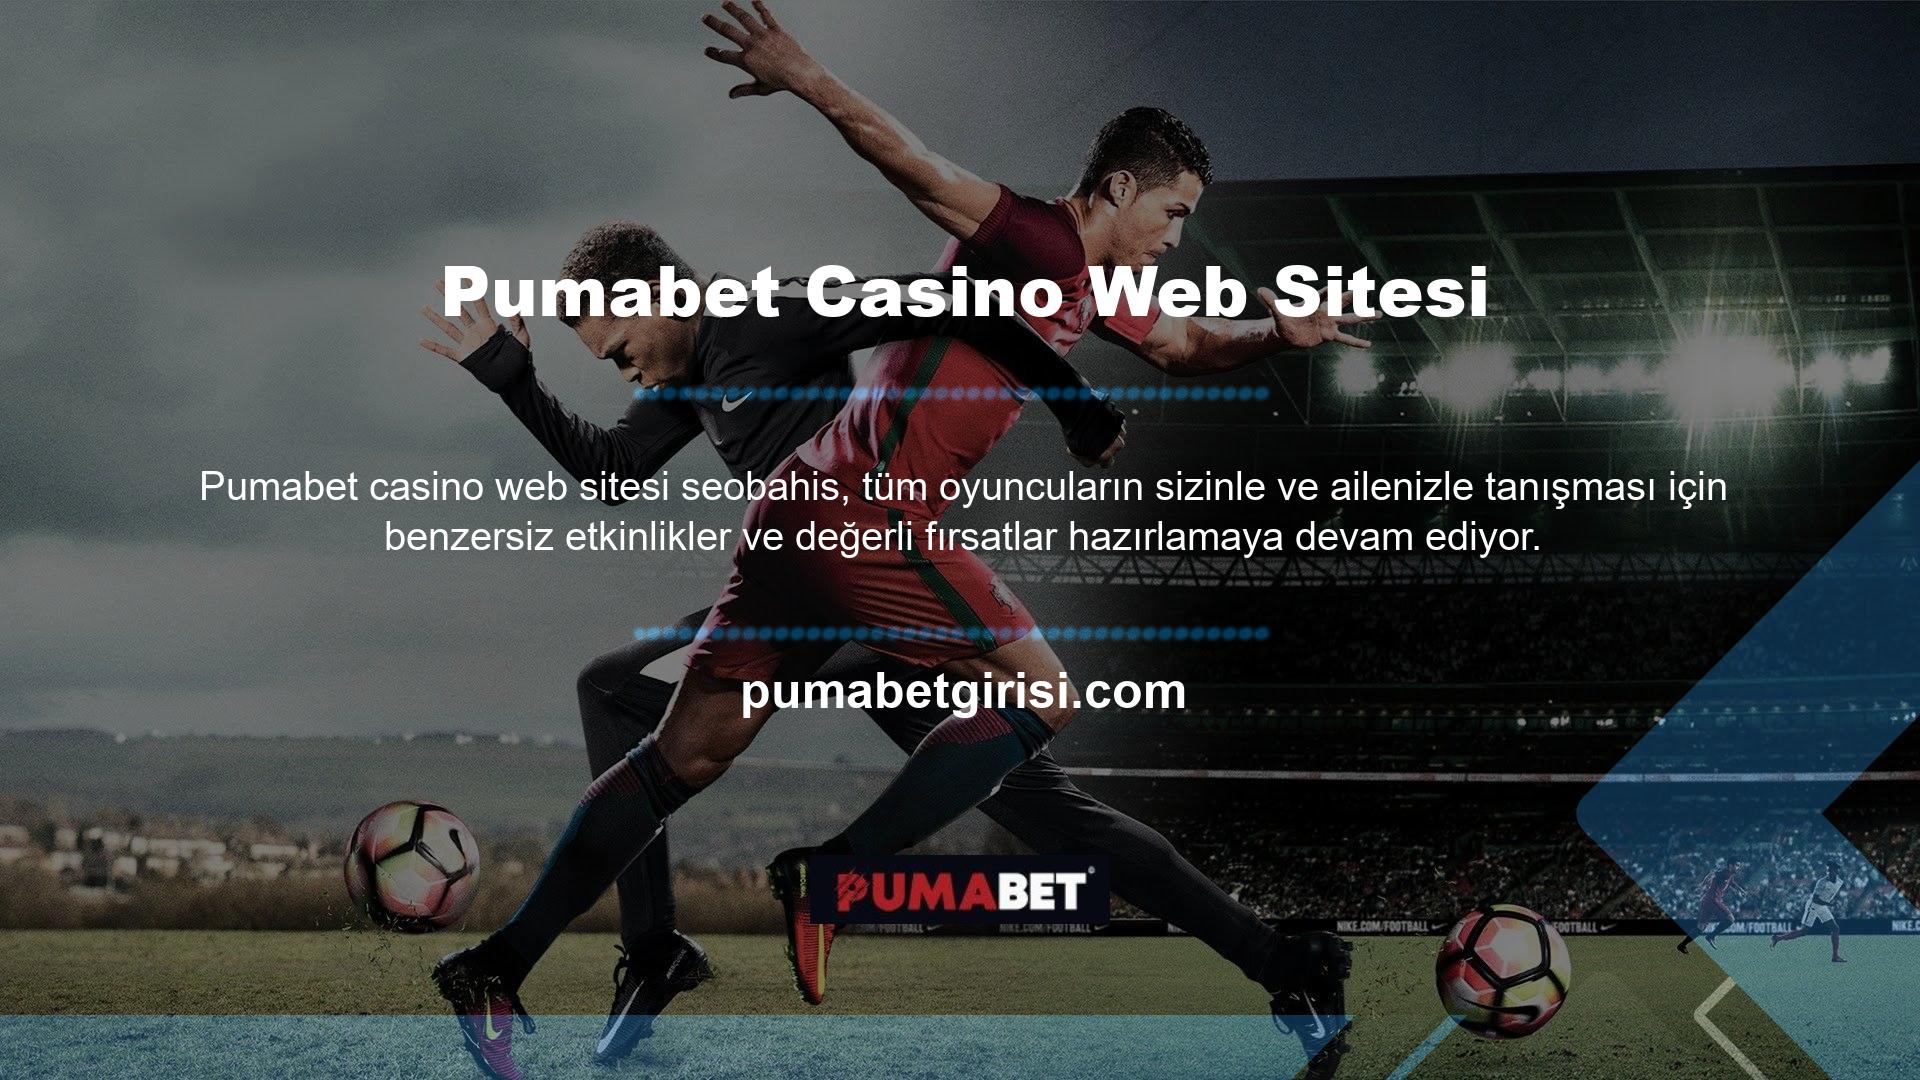 Yeni müşteri çekme konusundaki önemi ile tanınan bir site olan Pumabet Casino, sizi Hoş Geldiniz Bonusu ile karşılıyor